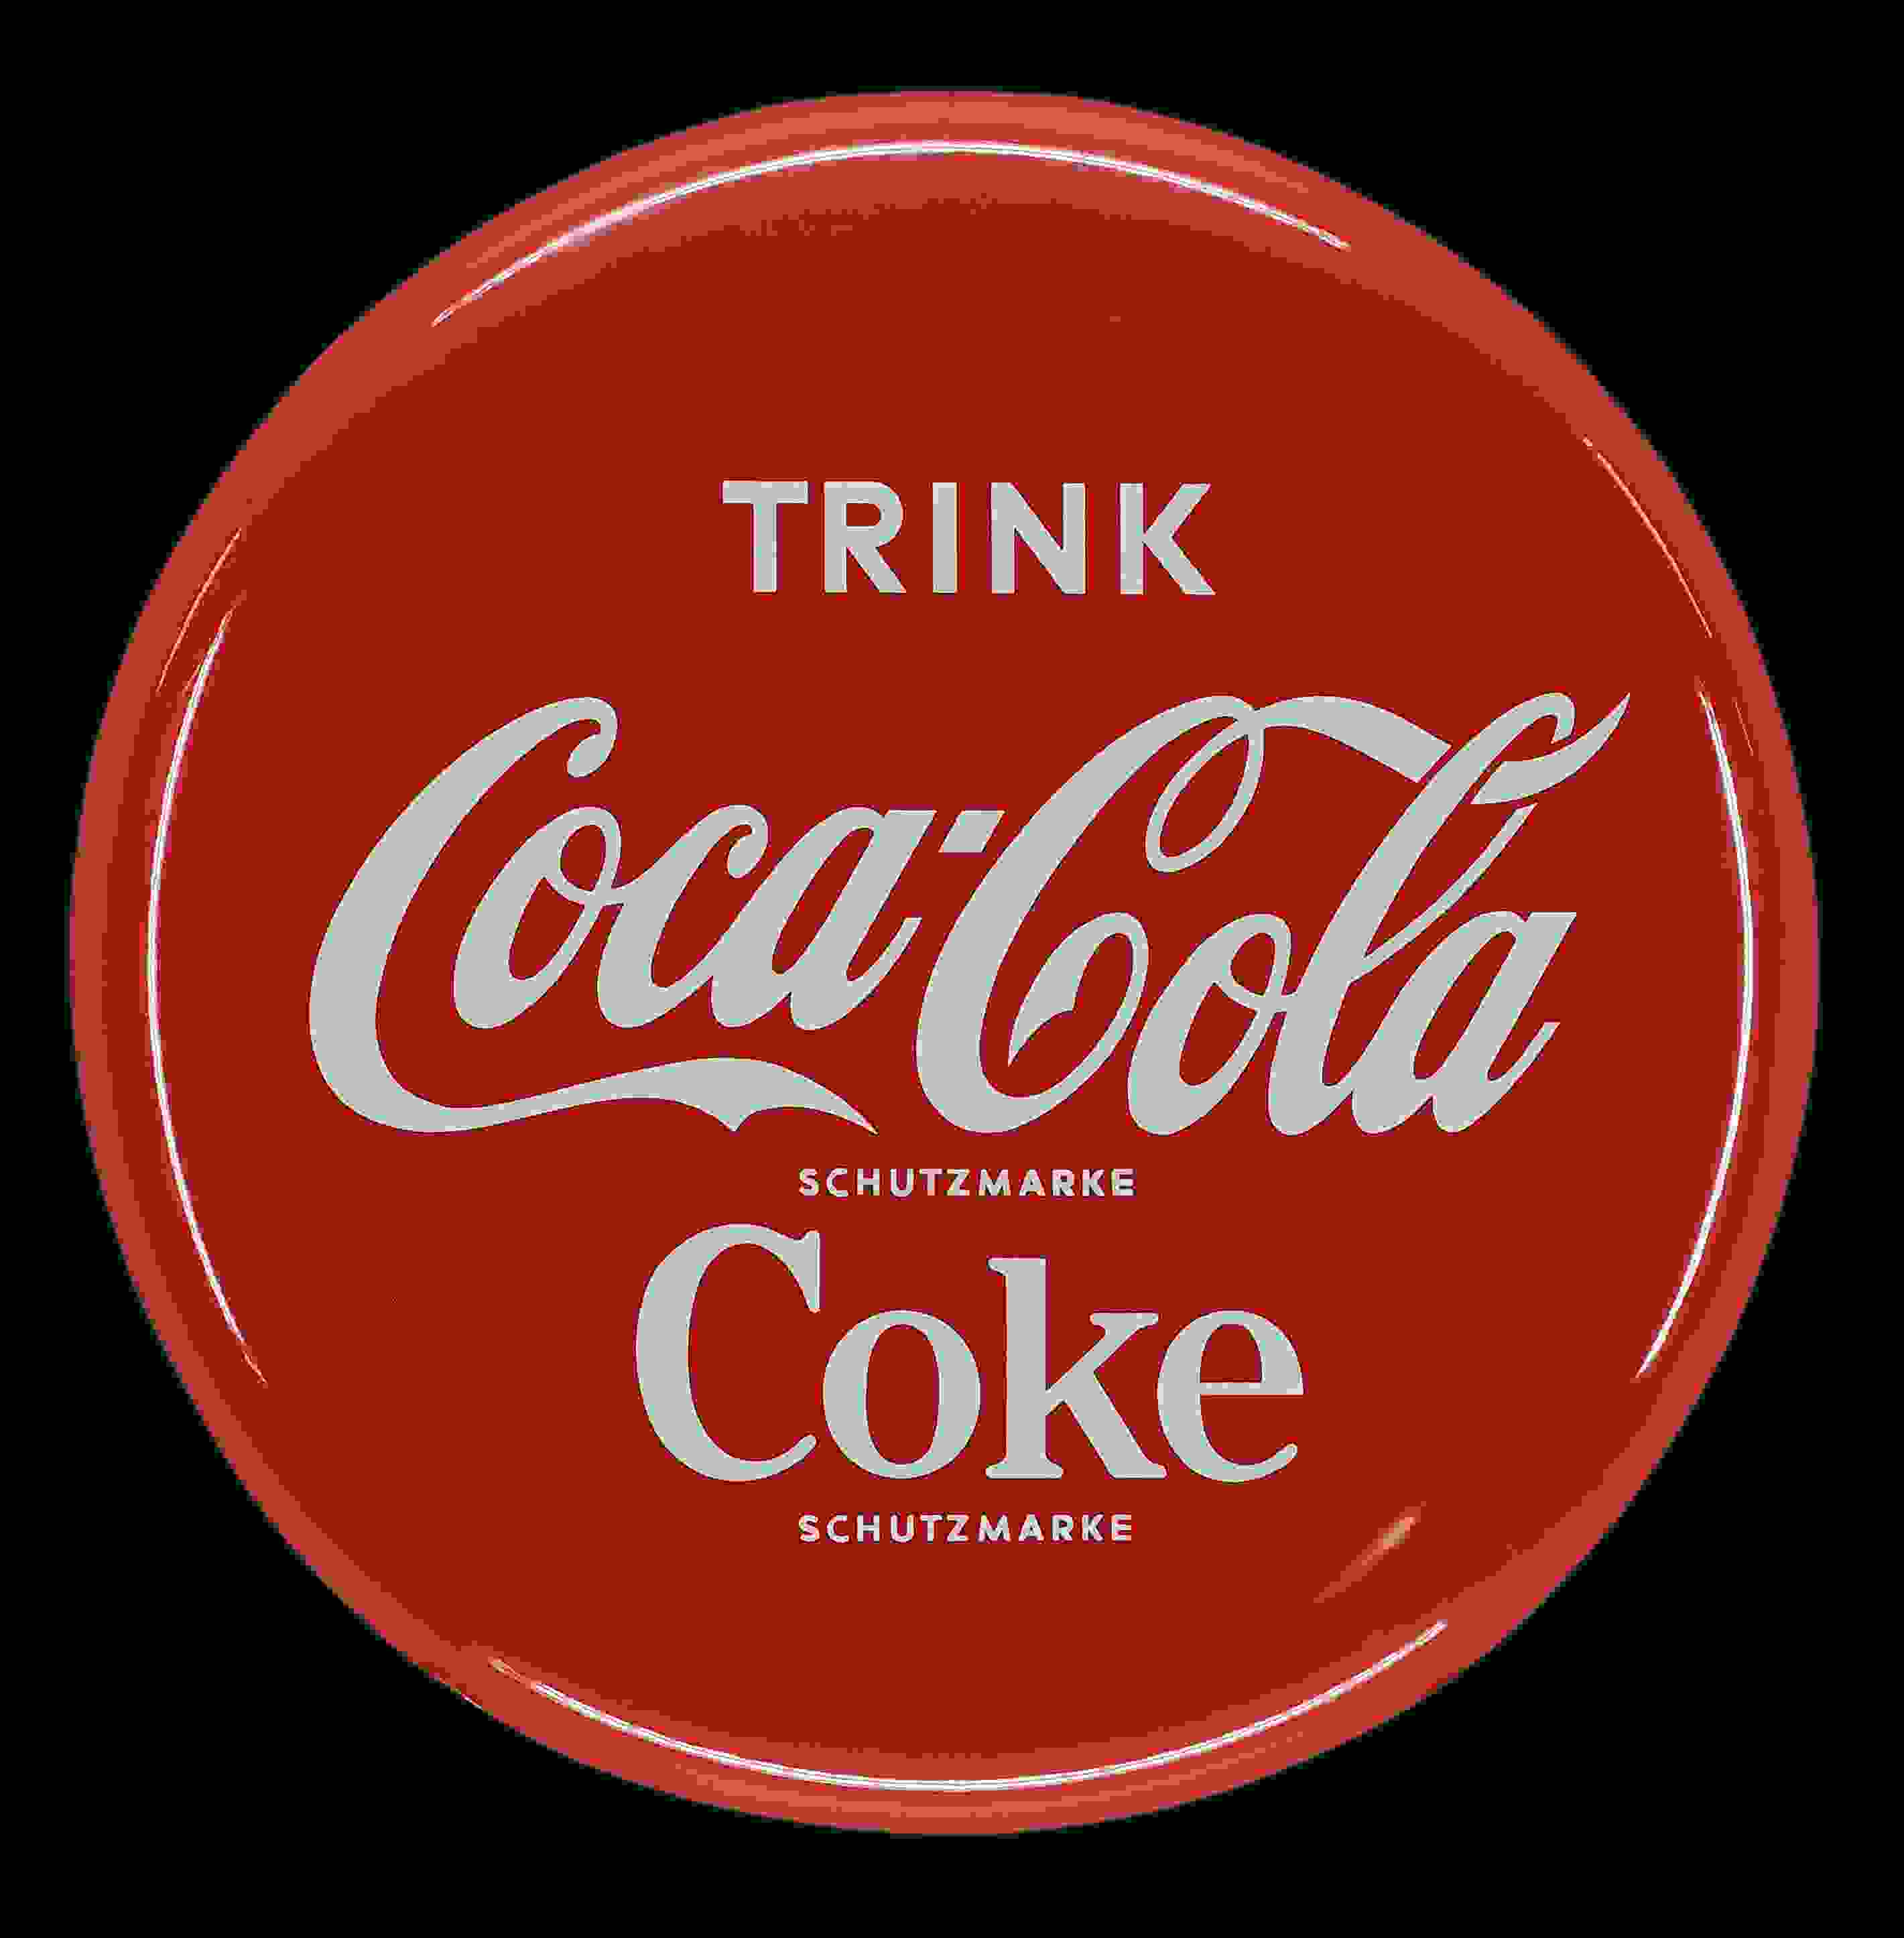 Coca-Cola Coke 